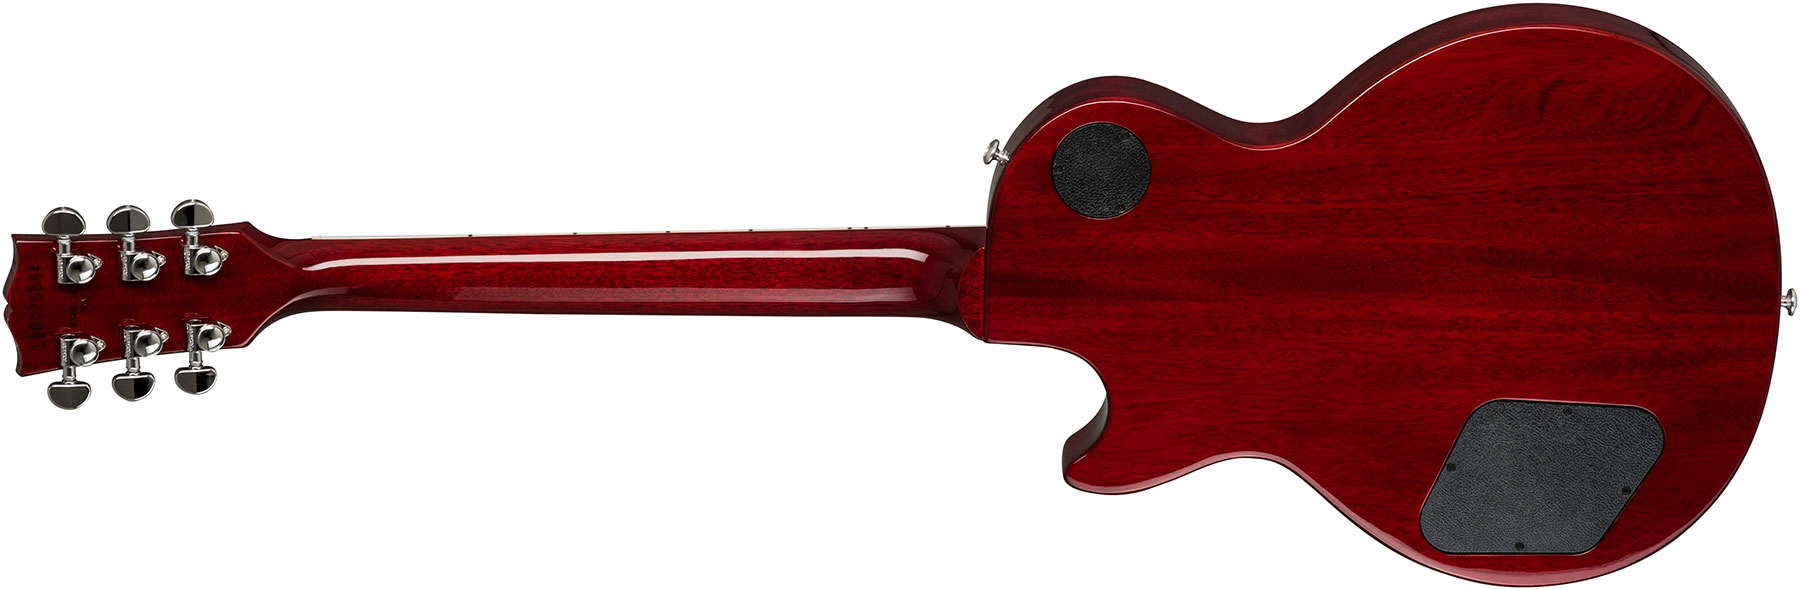 Gibson Les Paul Studio 2019 Hh Ht Rw - Wine Red - Guitare Électrique Single Cut - Variation 2